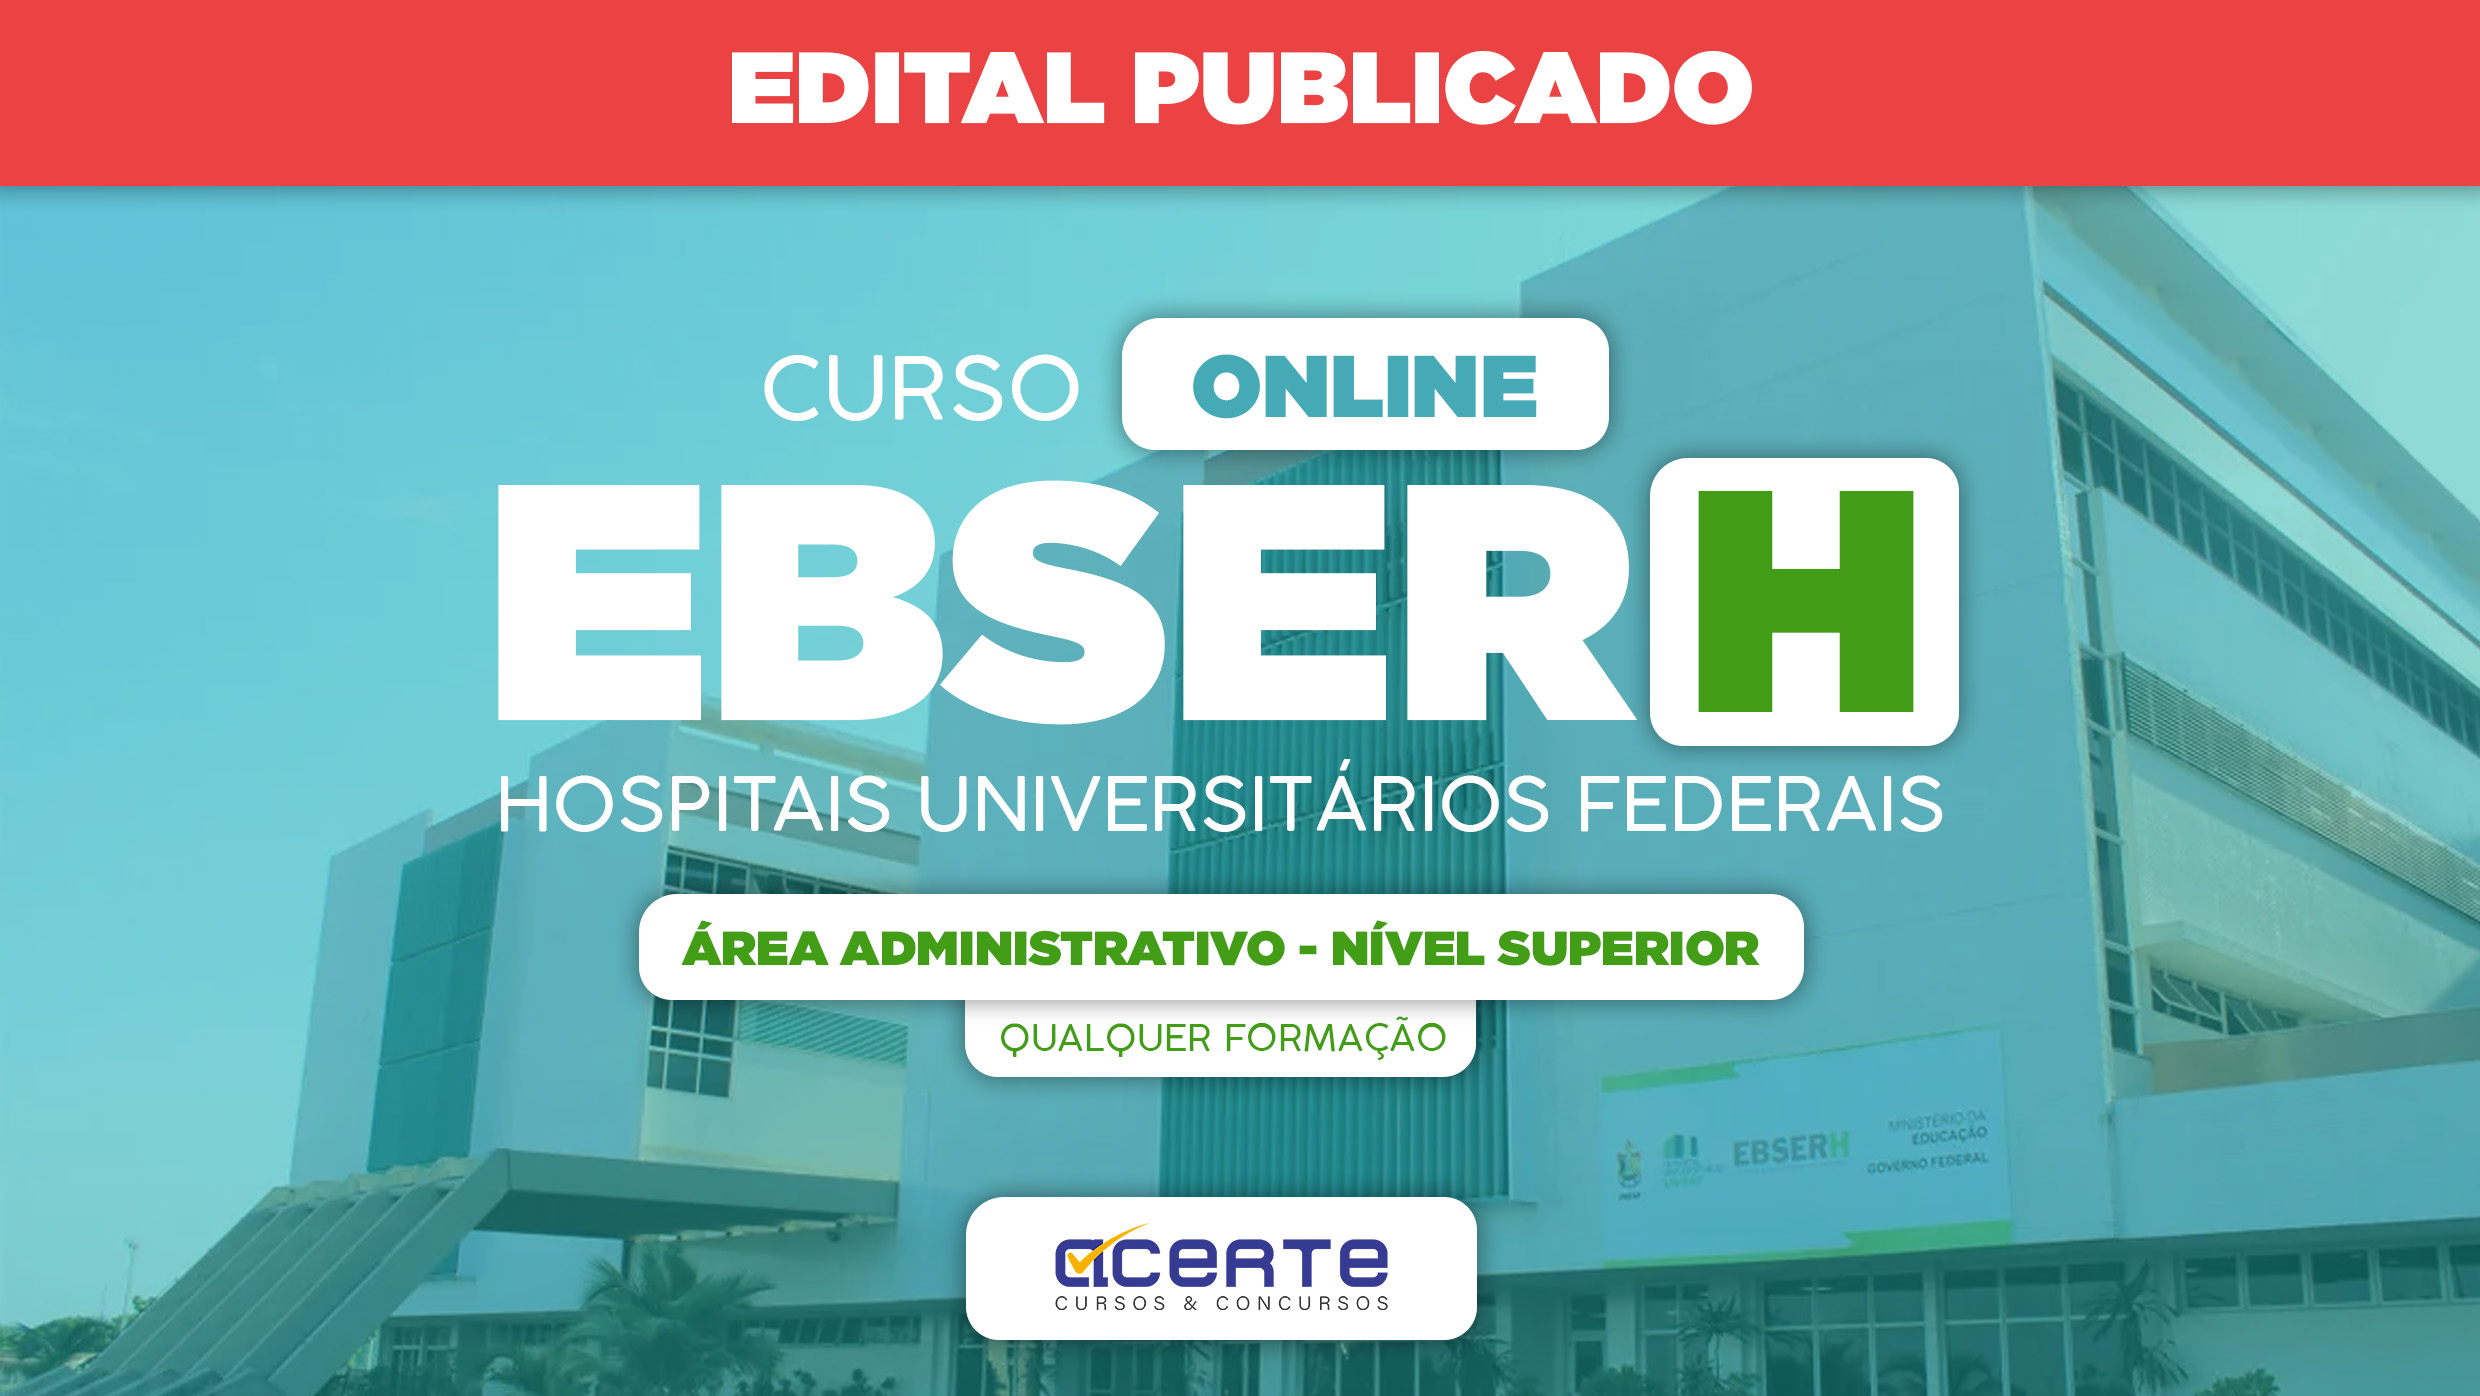 EBSERH - Analista Administrativo - Nível Superior  Qualquer Formação - Online